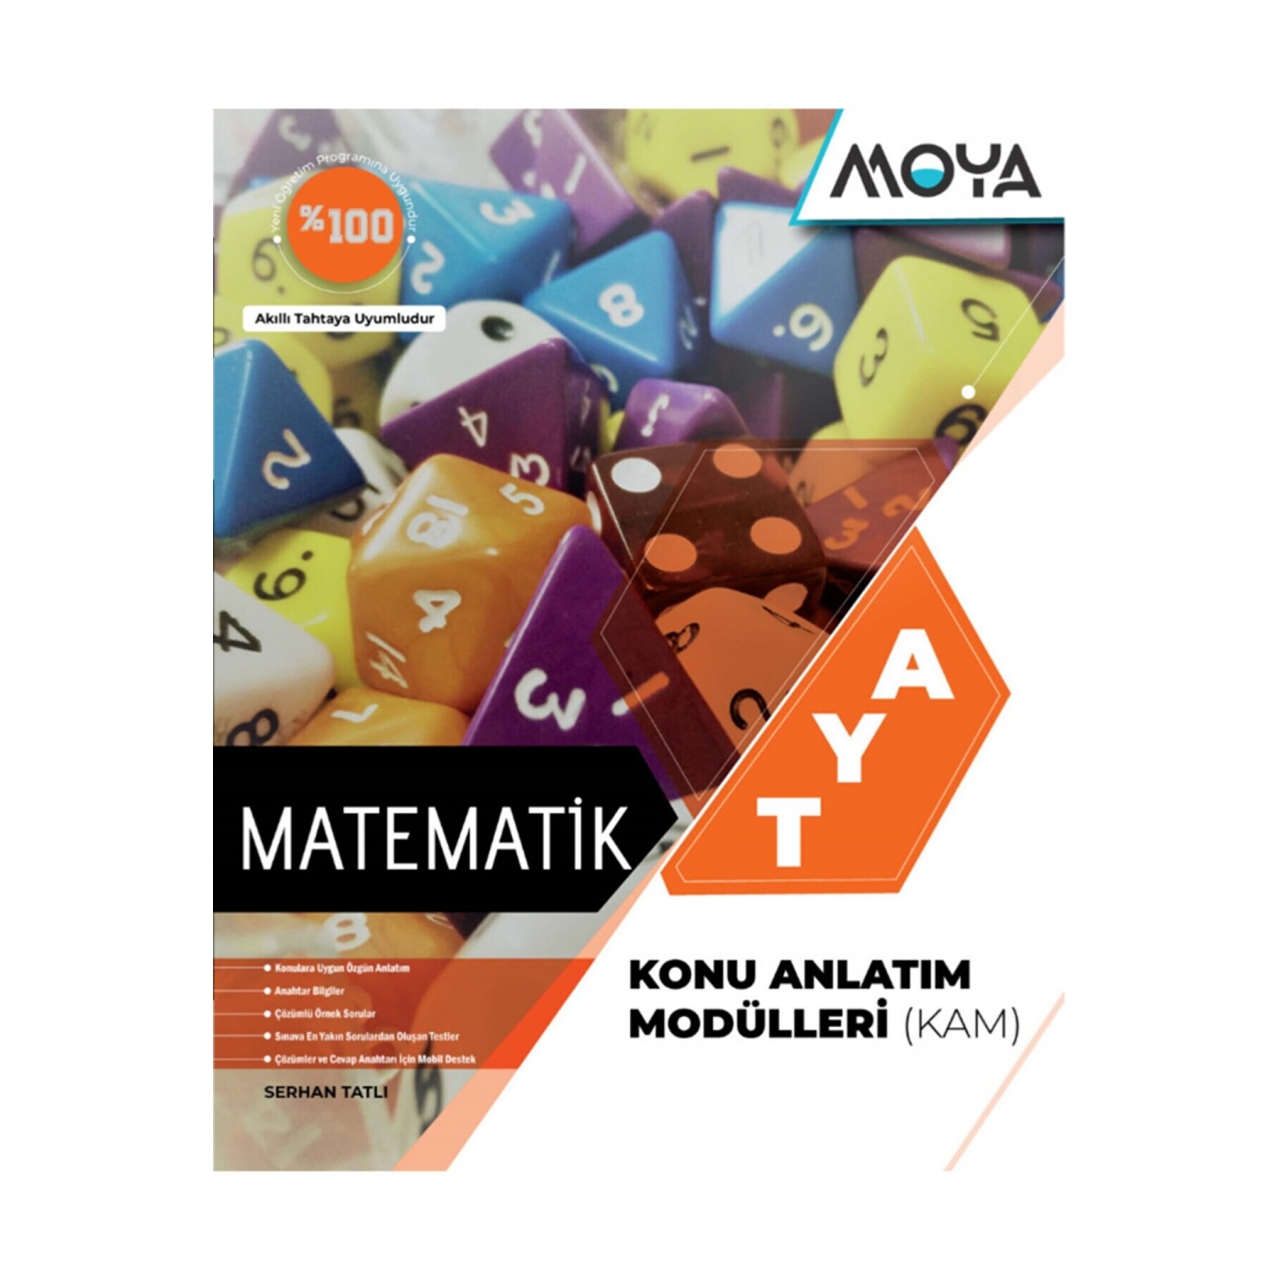 AYT Matematik Konu Anlatım Modülleri Moya Yayınları